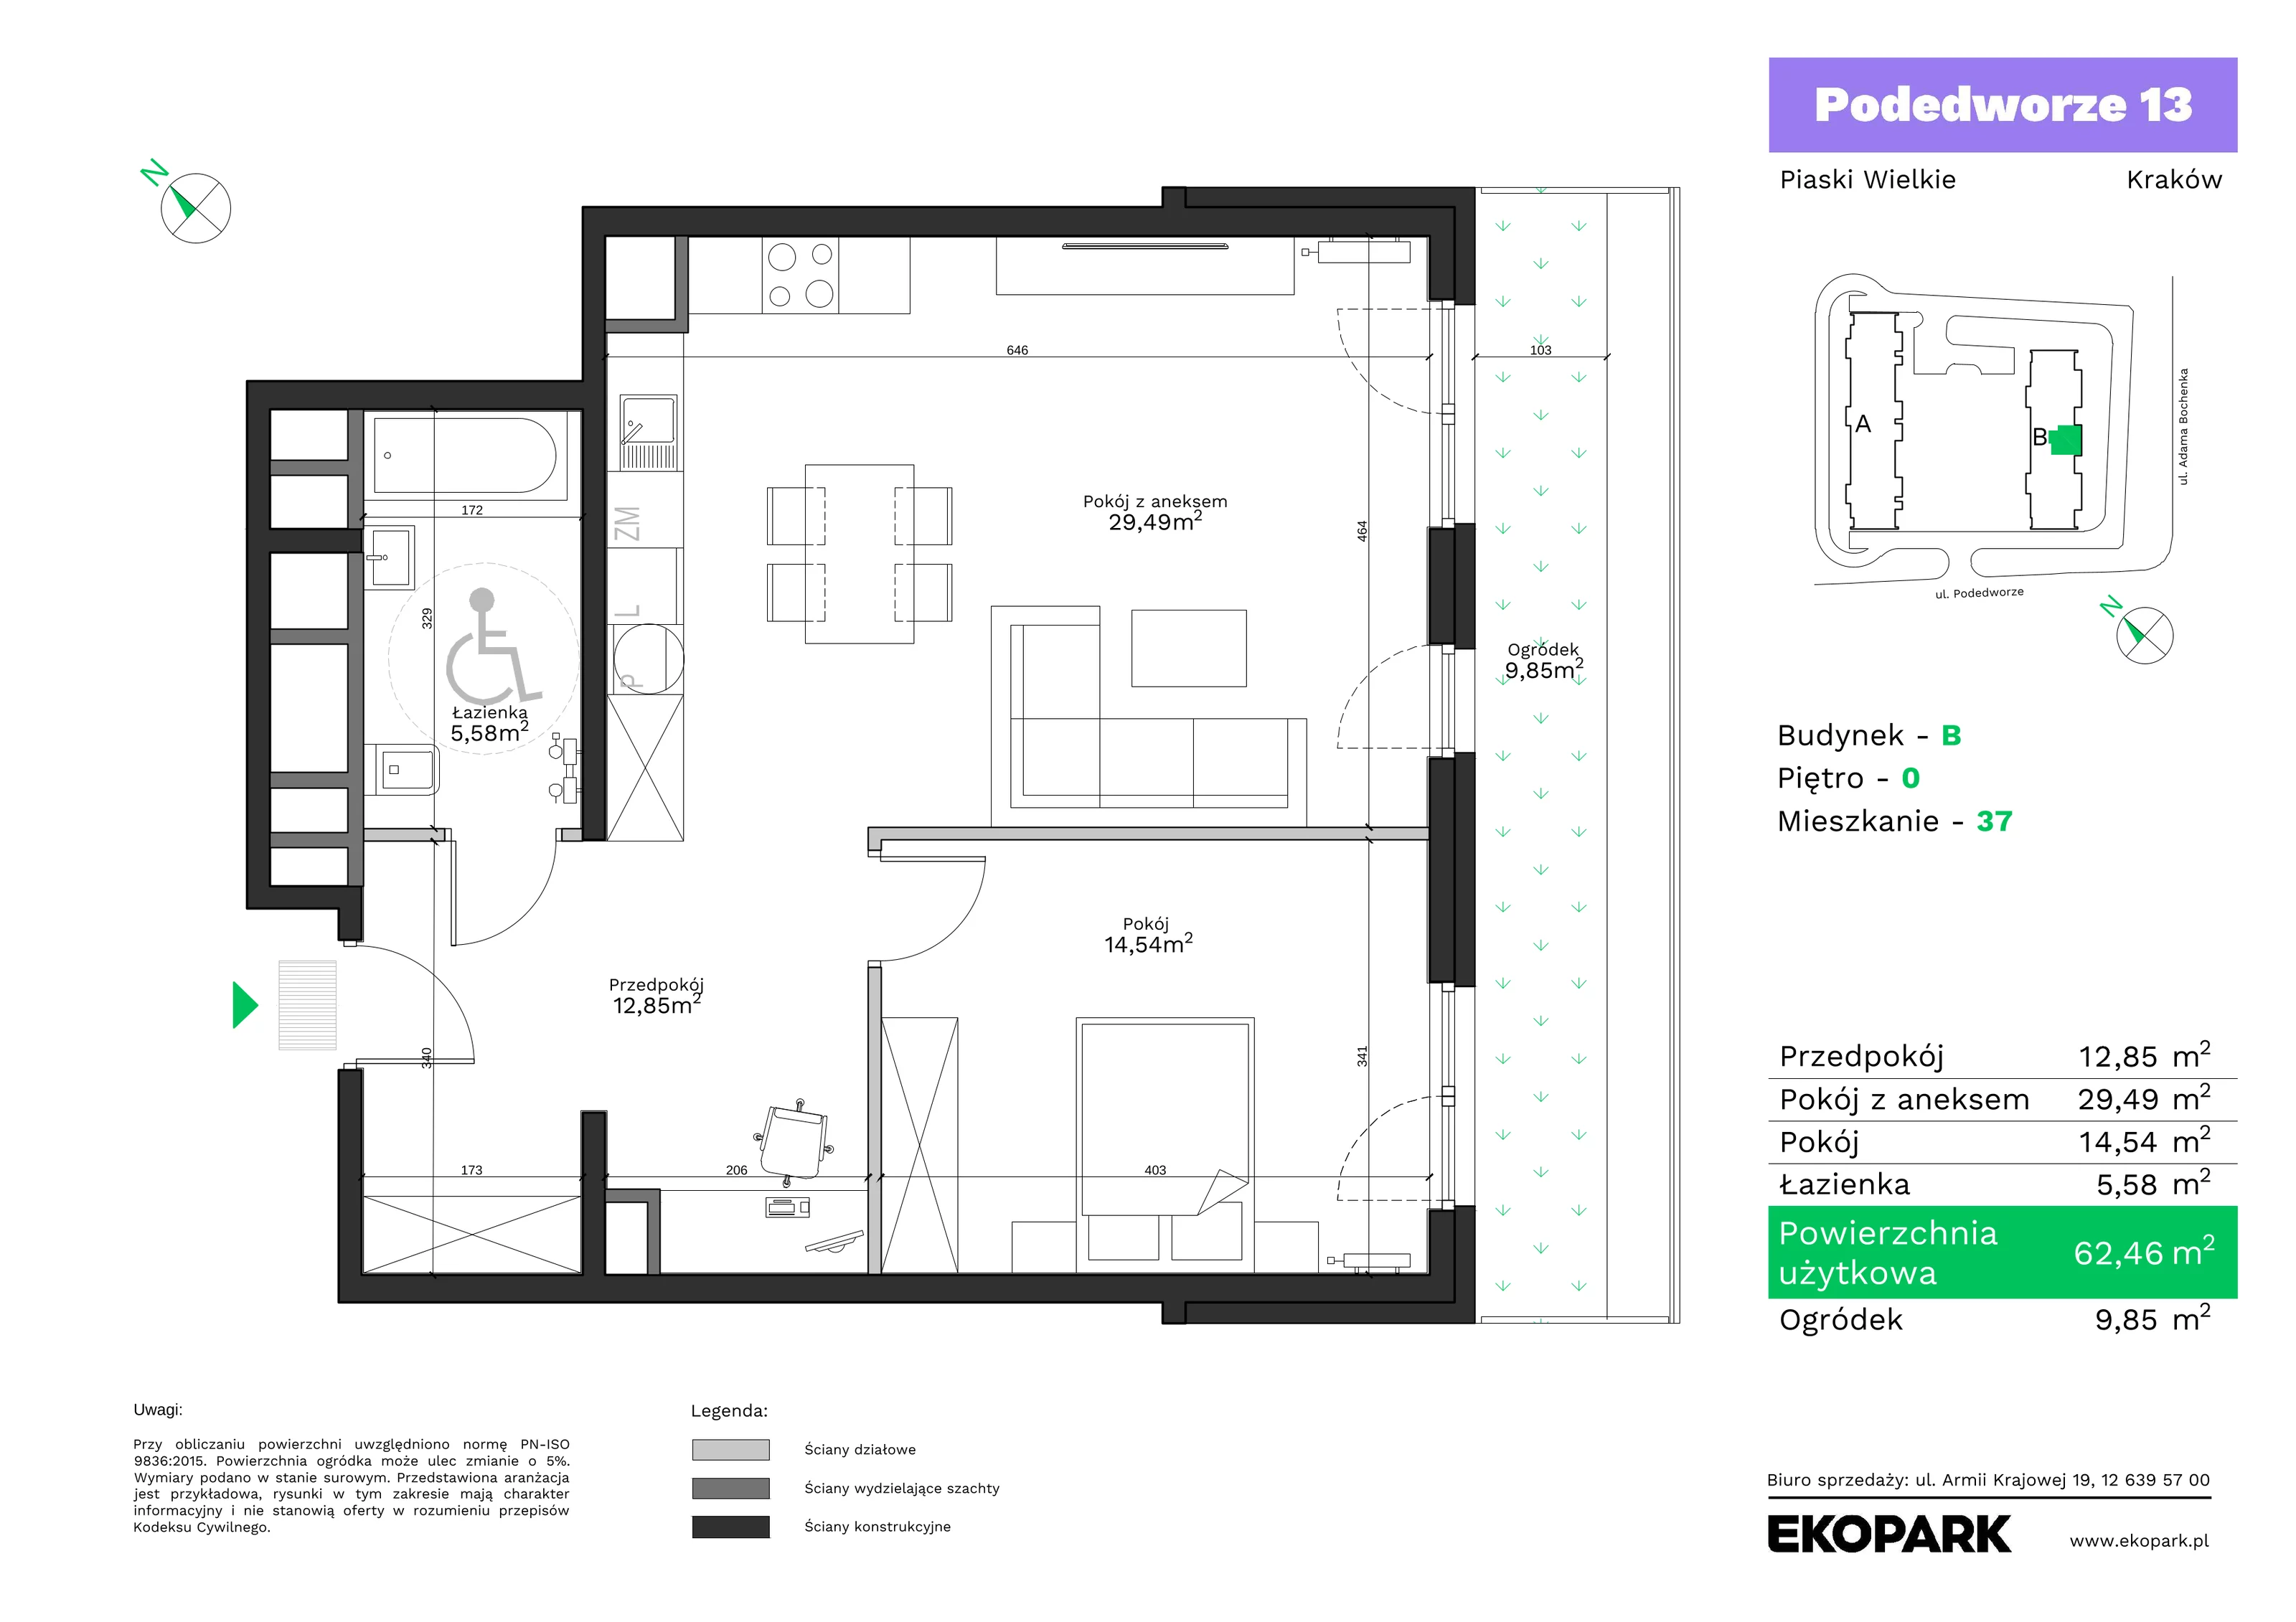 Mieszkanie 62,46 m², parter, oferta nr B37, Podedworze 13, Kraków, Podgórze Duchackie, Piaski Wielkie, ul. Podedworze 13